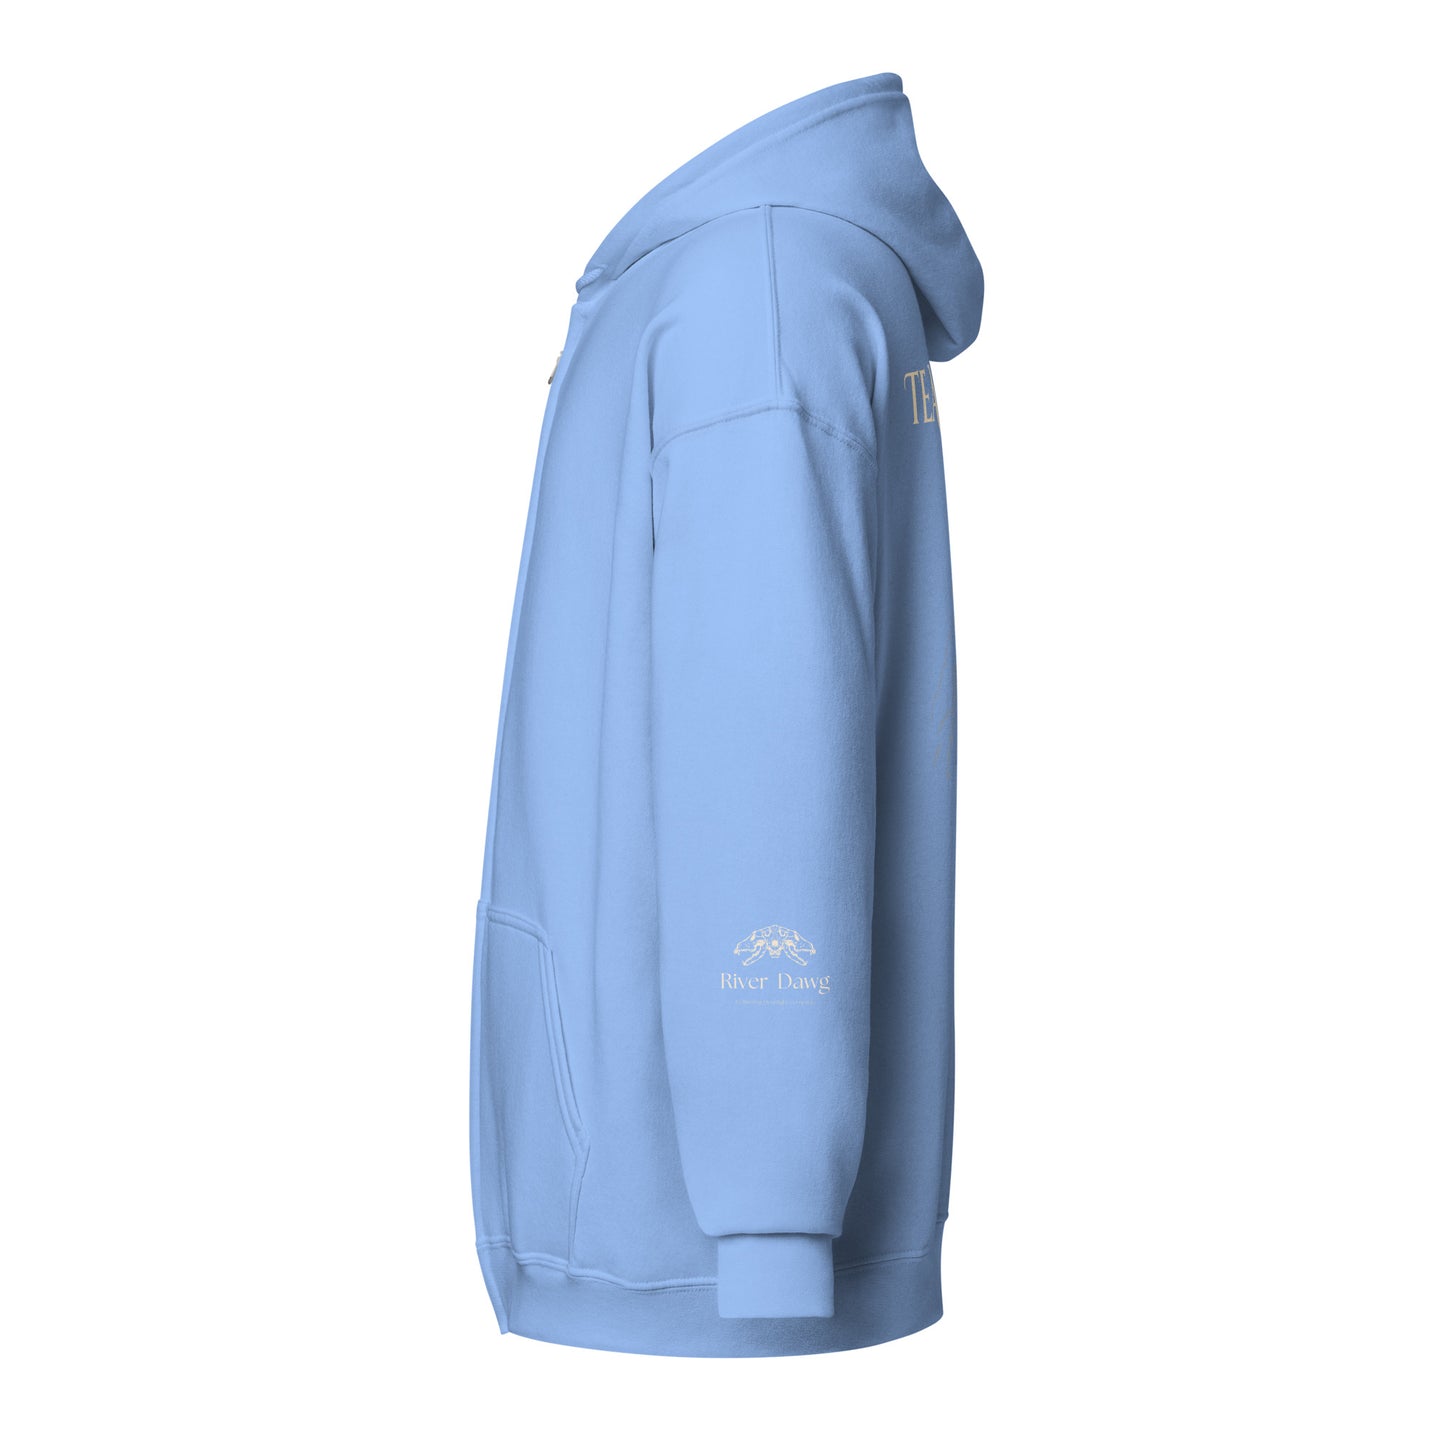 Team Bear Unisex heavy blend zip hoodie